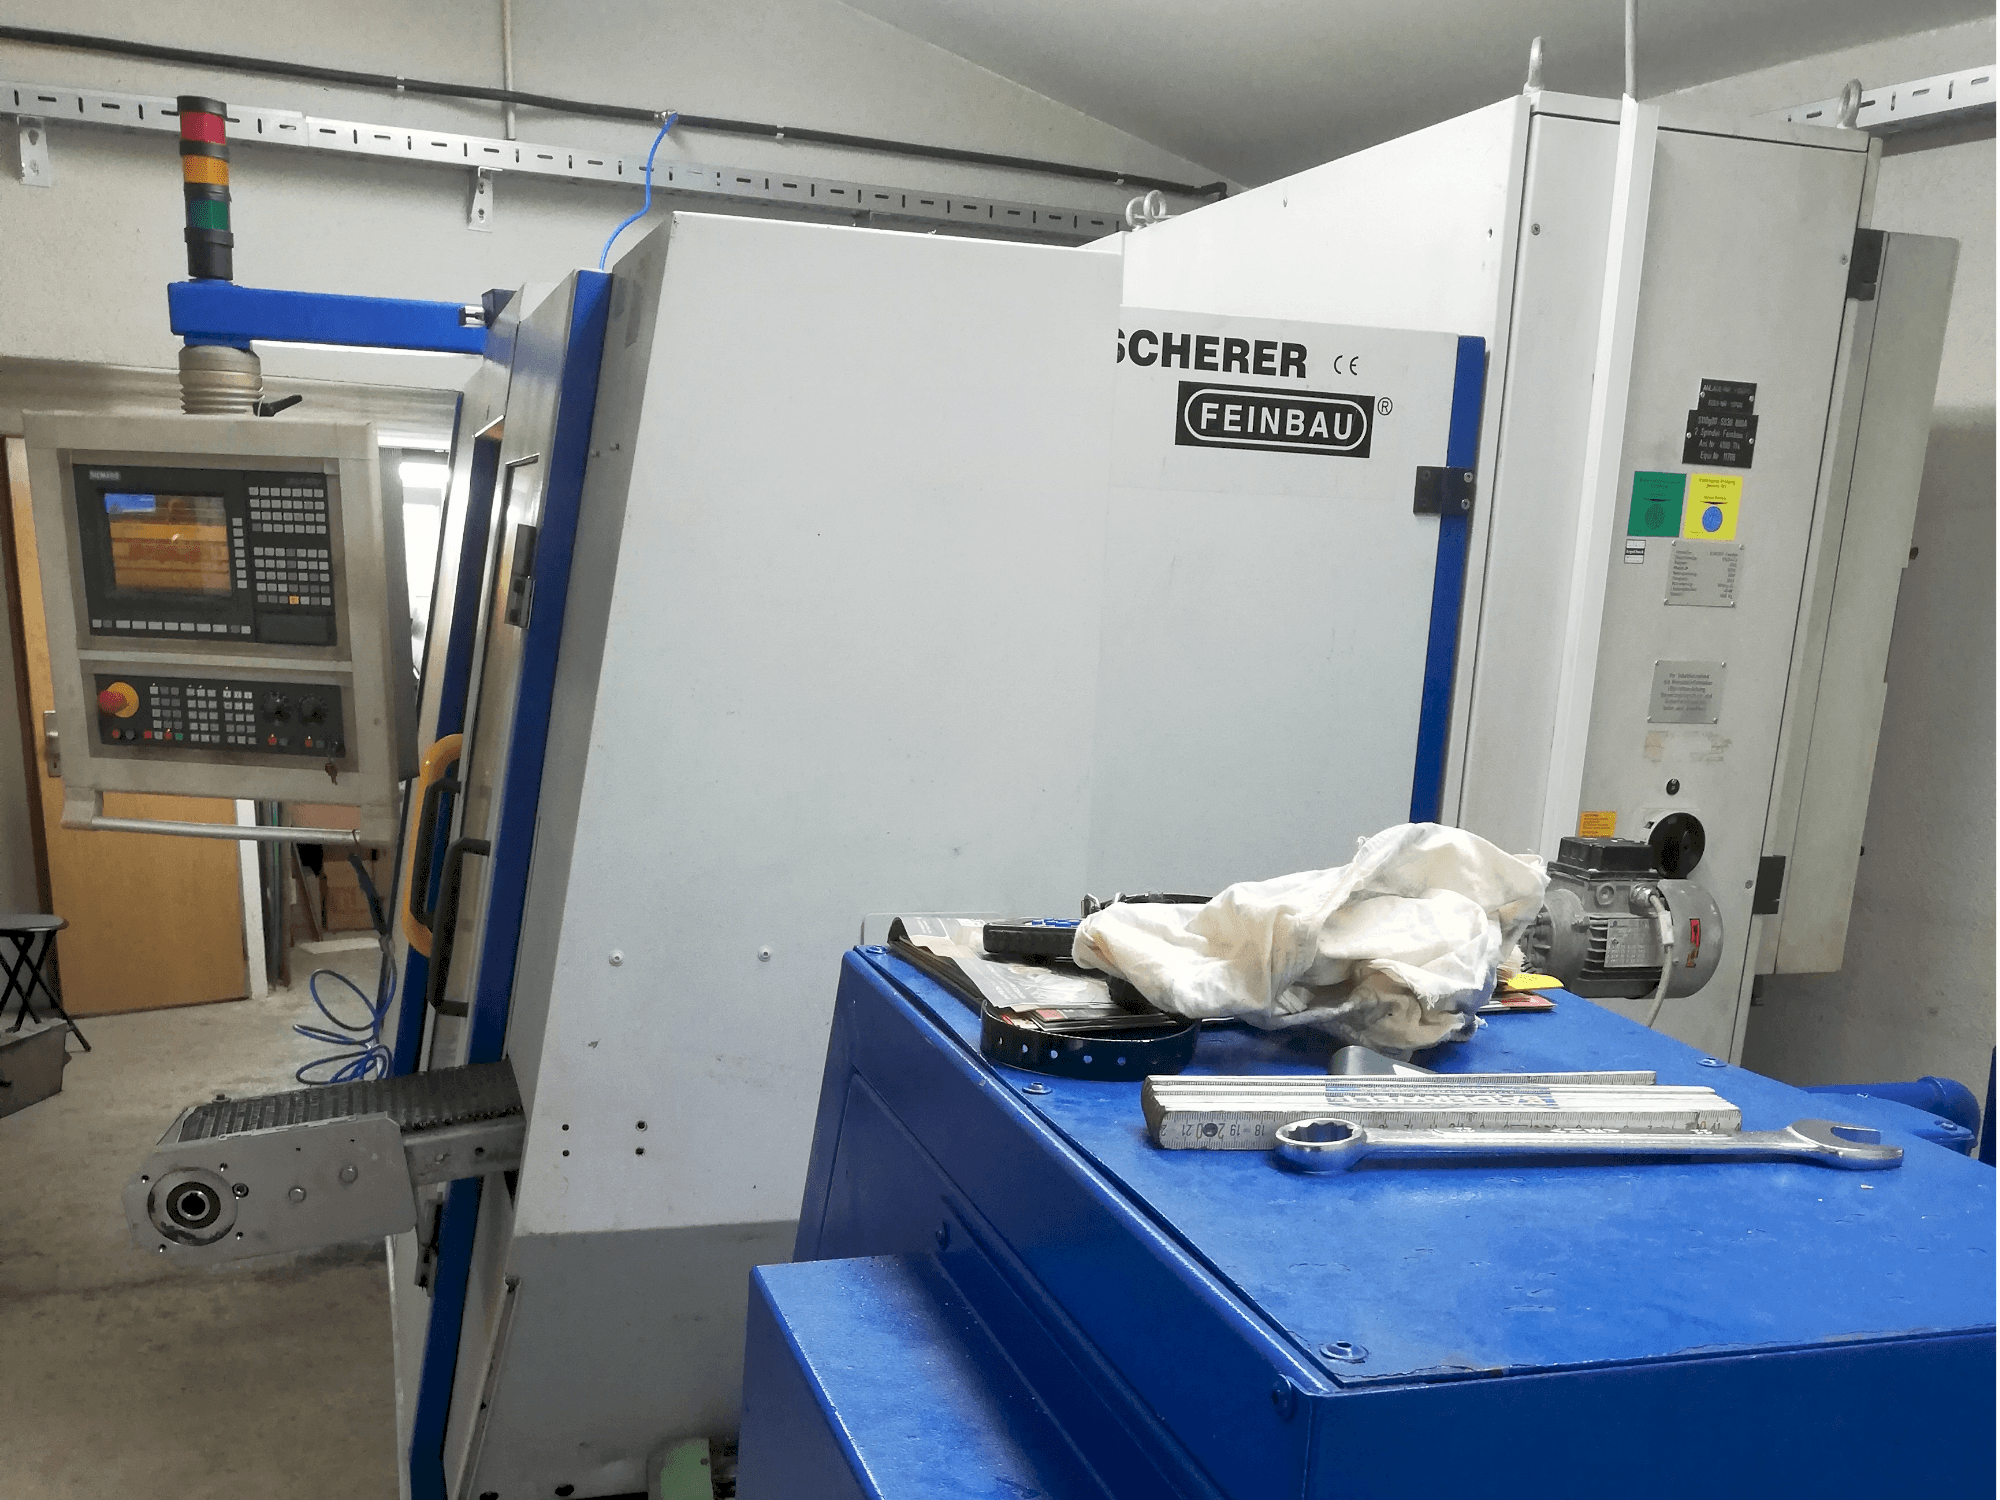 Čelní pohled  na Scherer - Feinbau CNC244/2  stroj